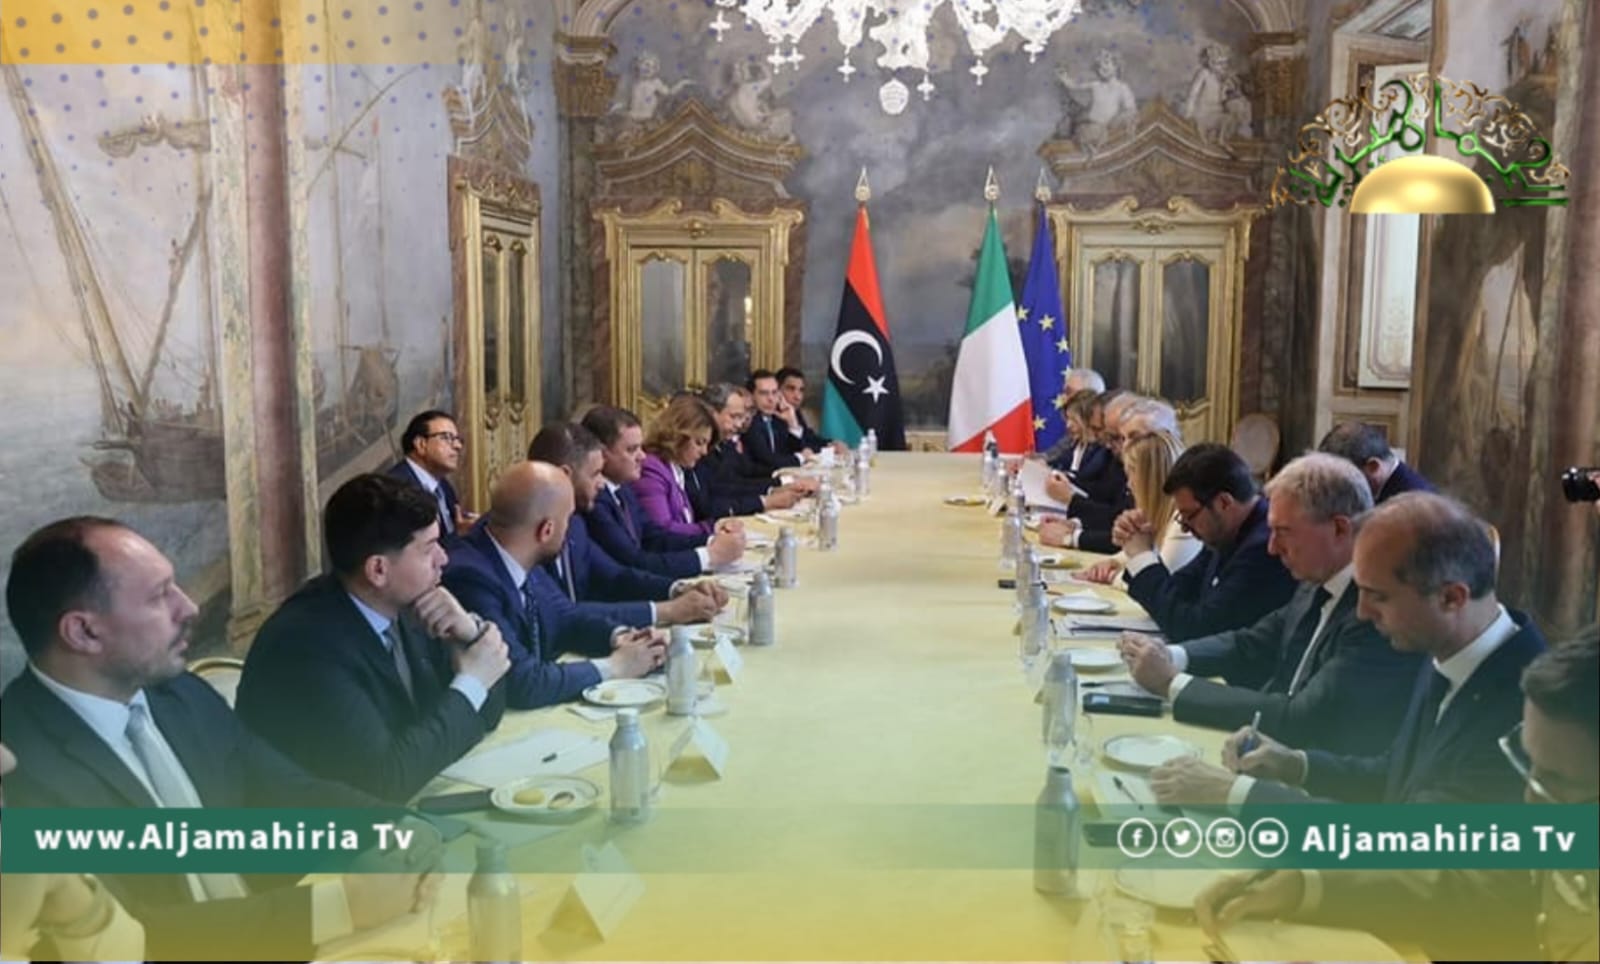 حكومة الوحدة وإيطاليا توقعان مذكرات التفاهم في مجالات الطاقة والاستثمار والهجرة والربط الكهربائي